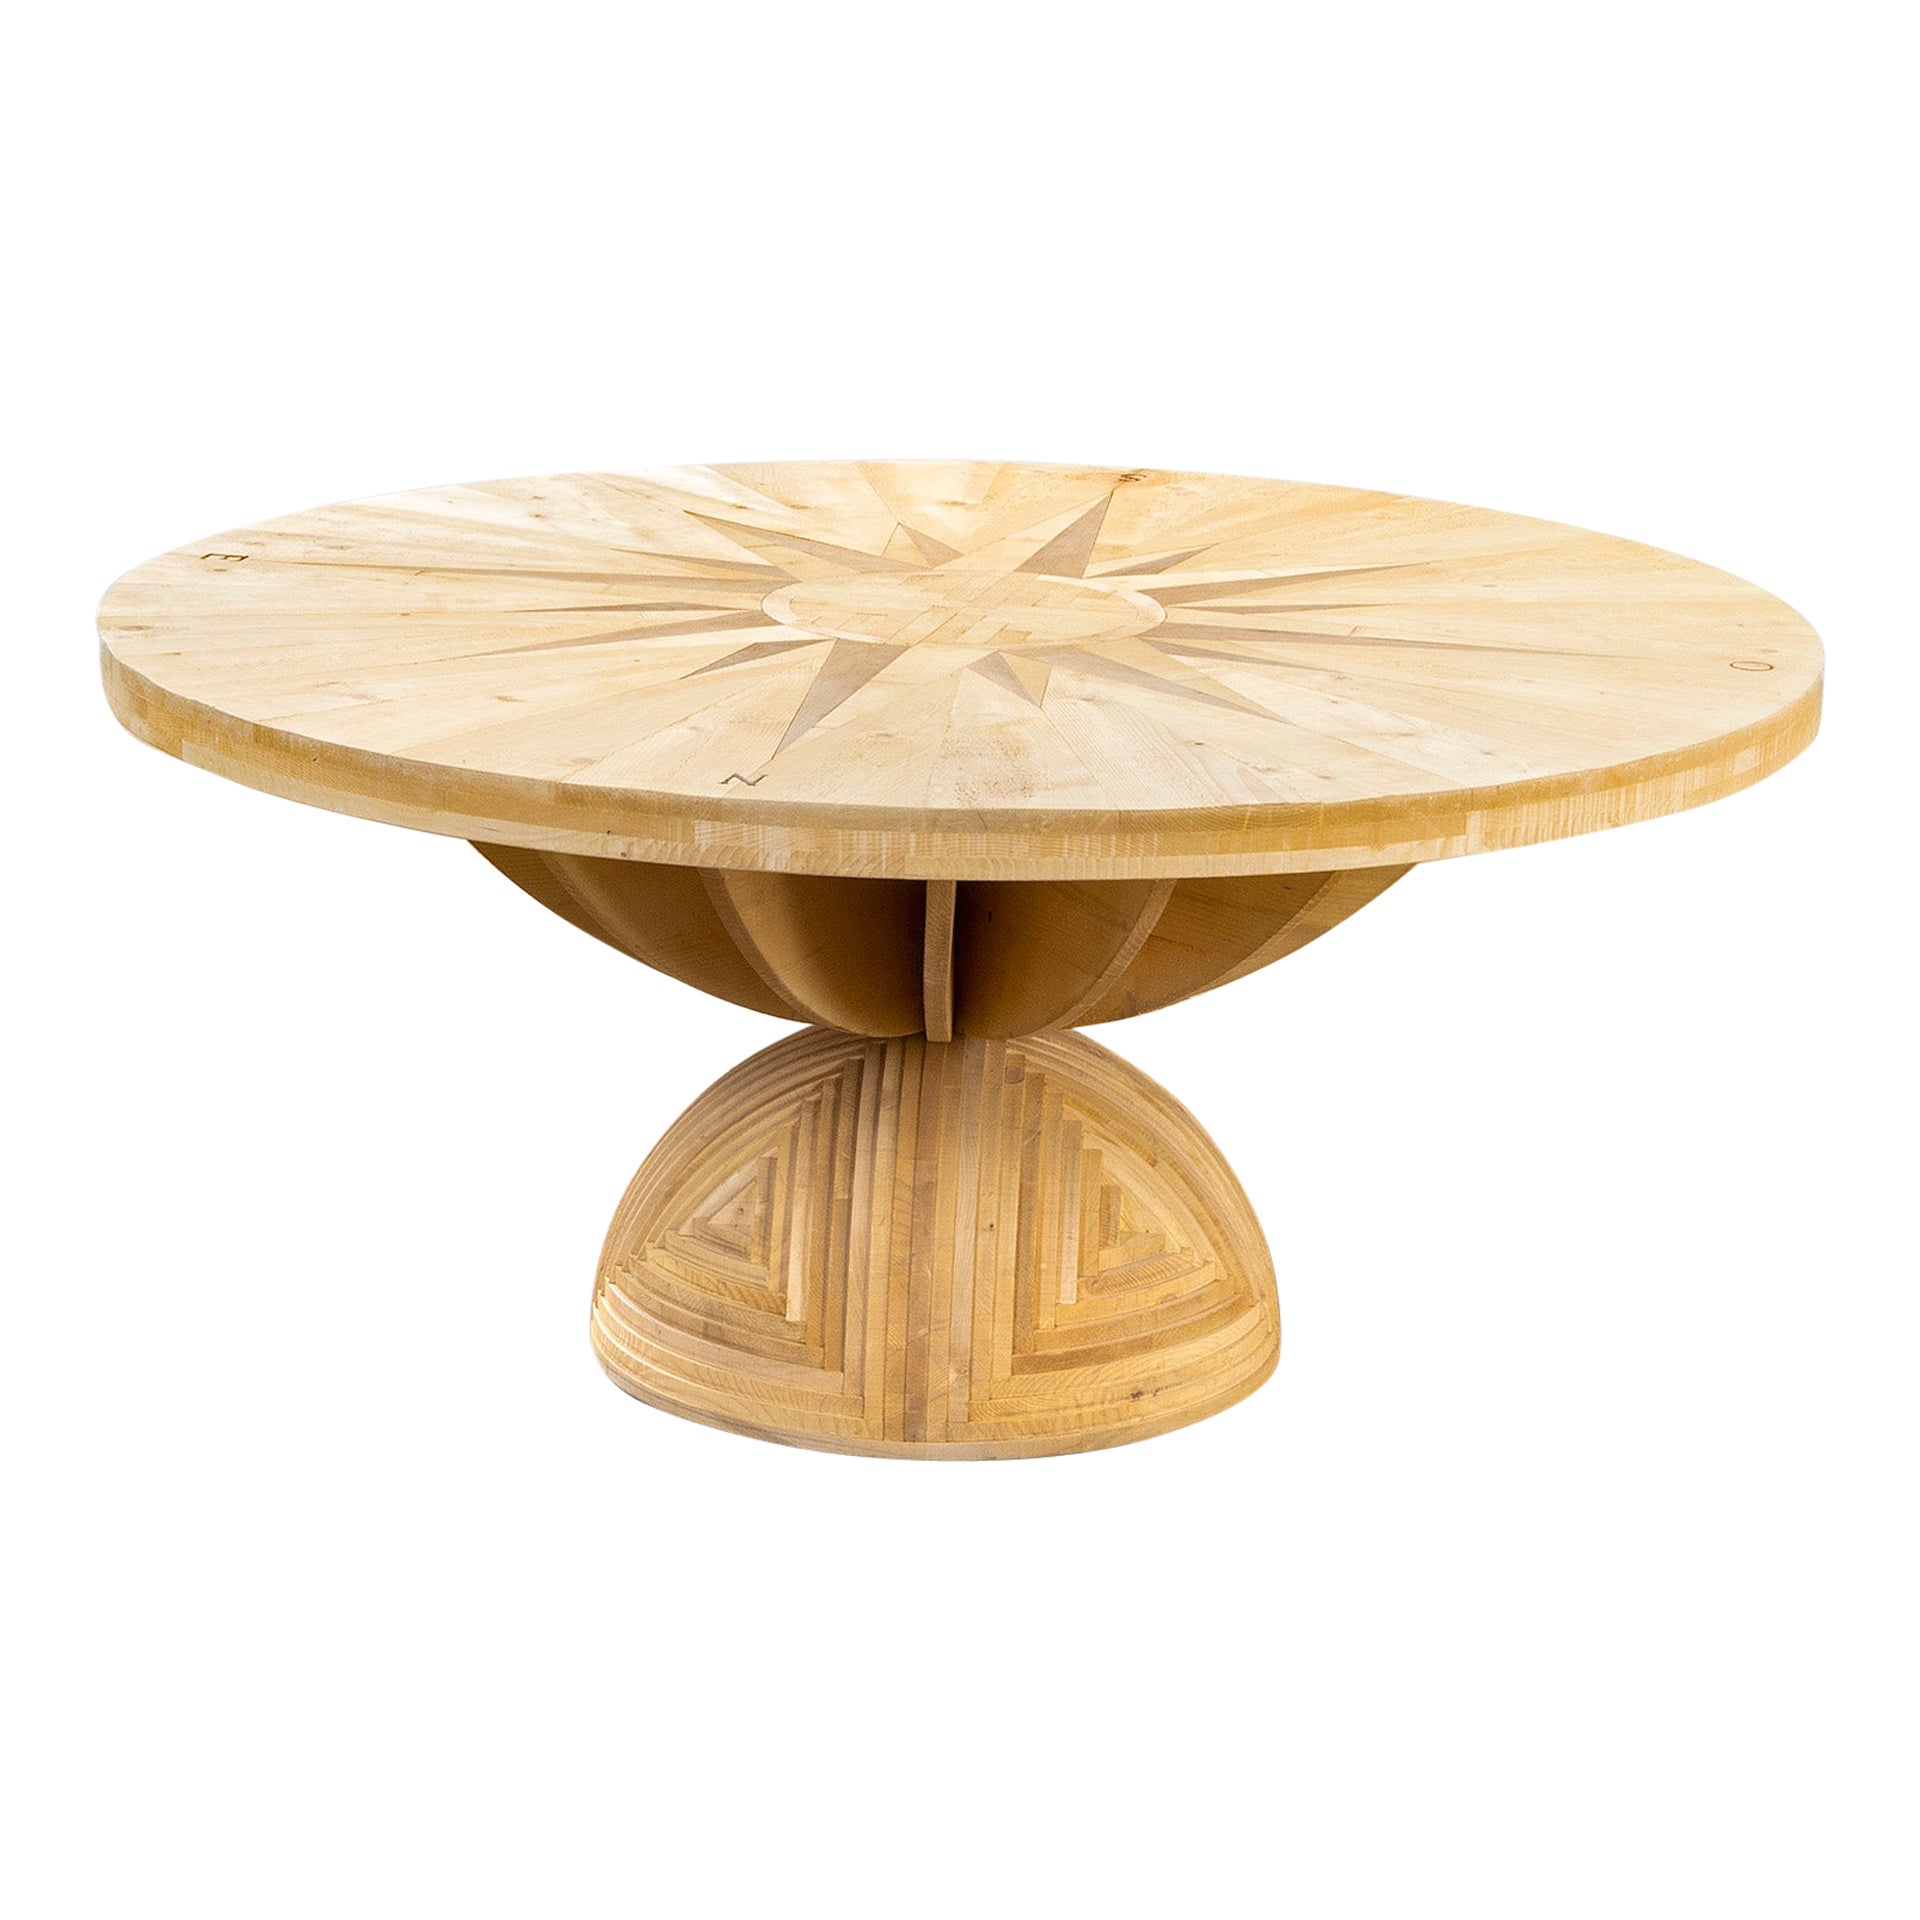 20th Century, Mario Ceroli Poltronova "Rosa Dei Venti" Table in Inlaid Wood, 70s For Sale